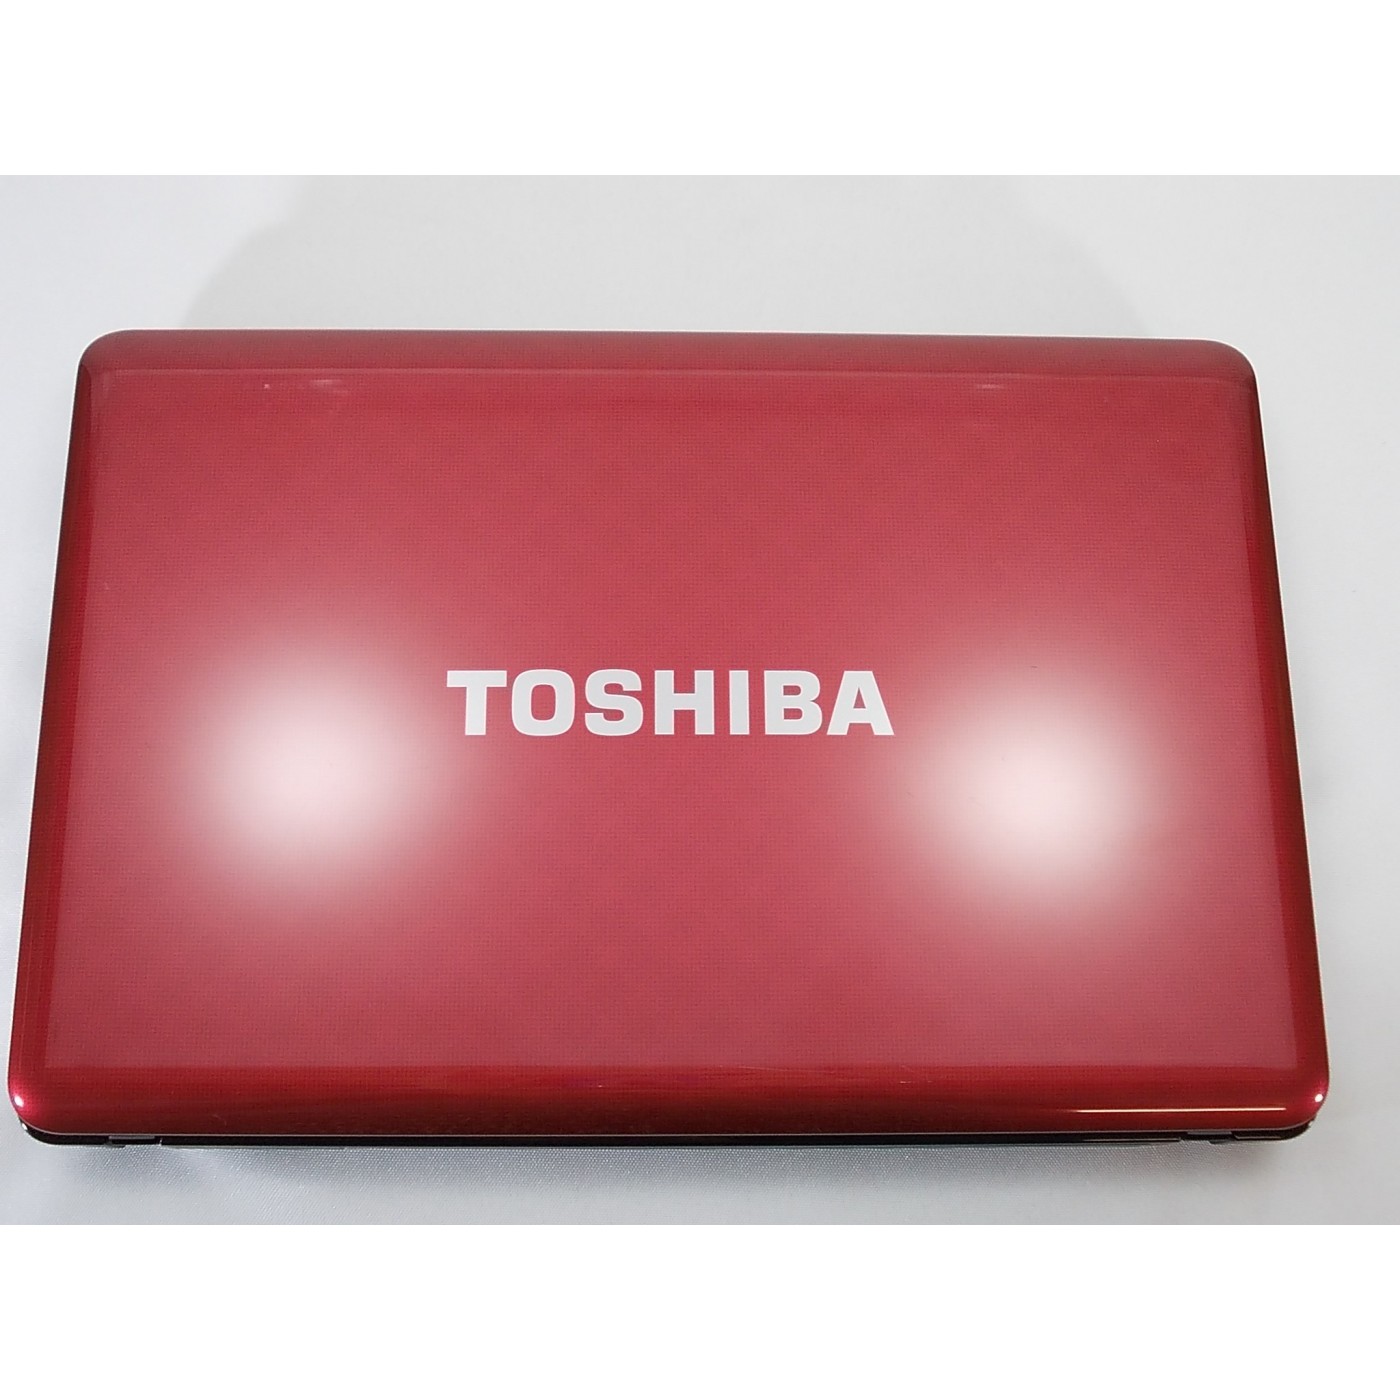 toshiba conexant high definition audio driver